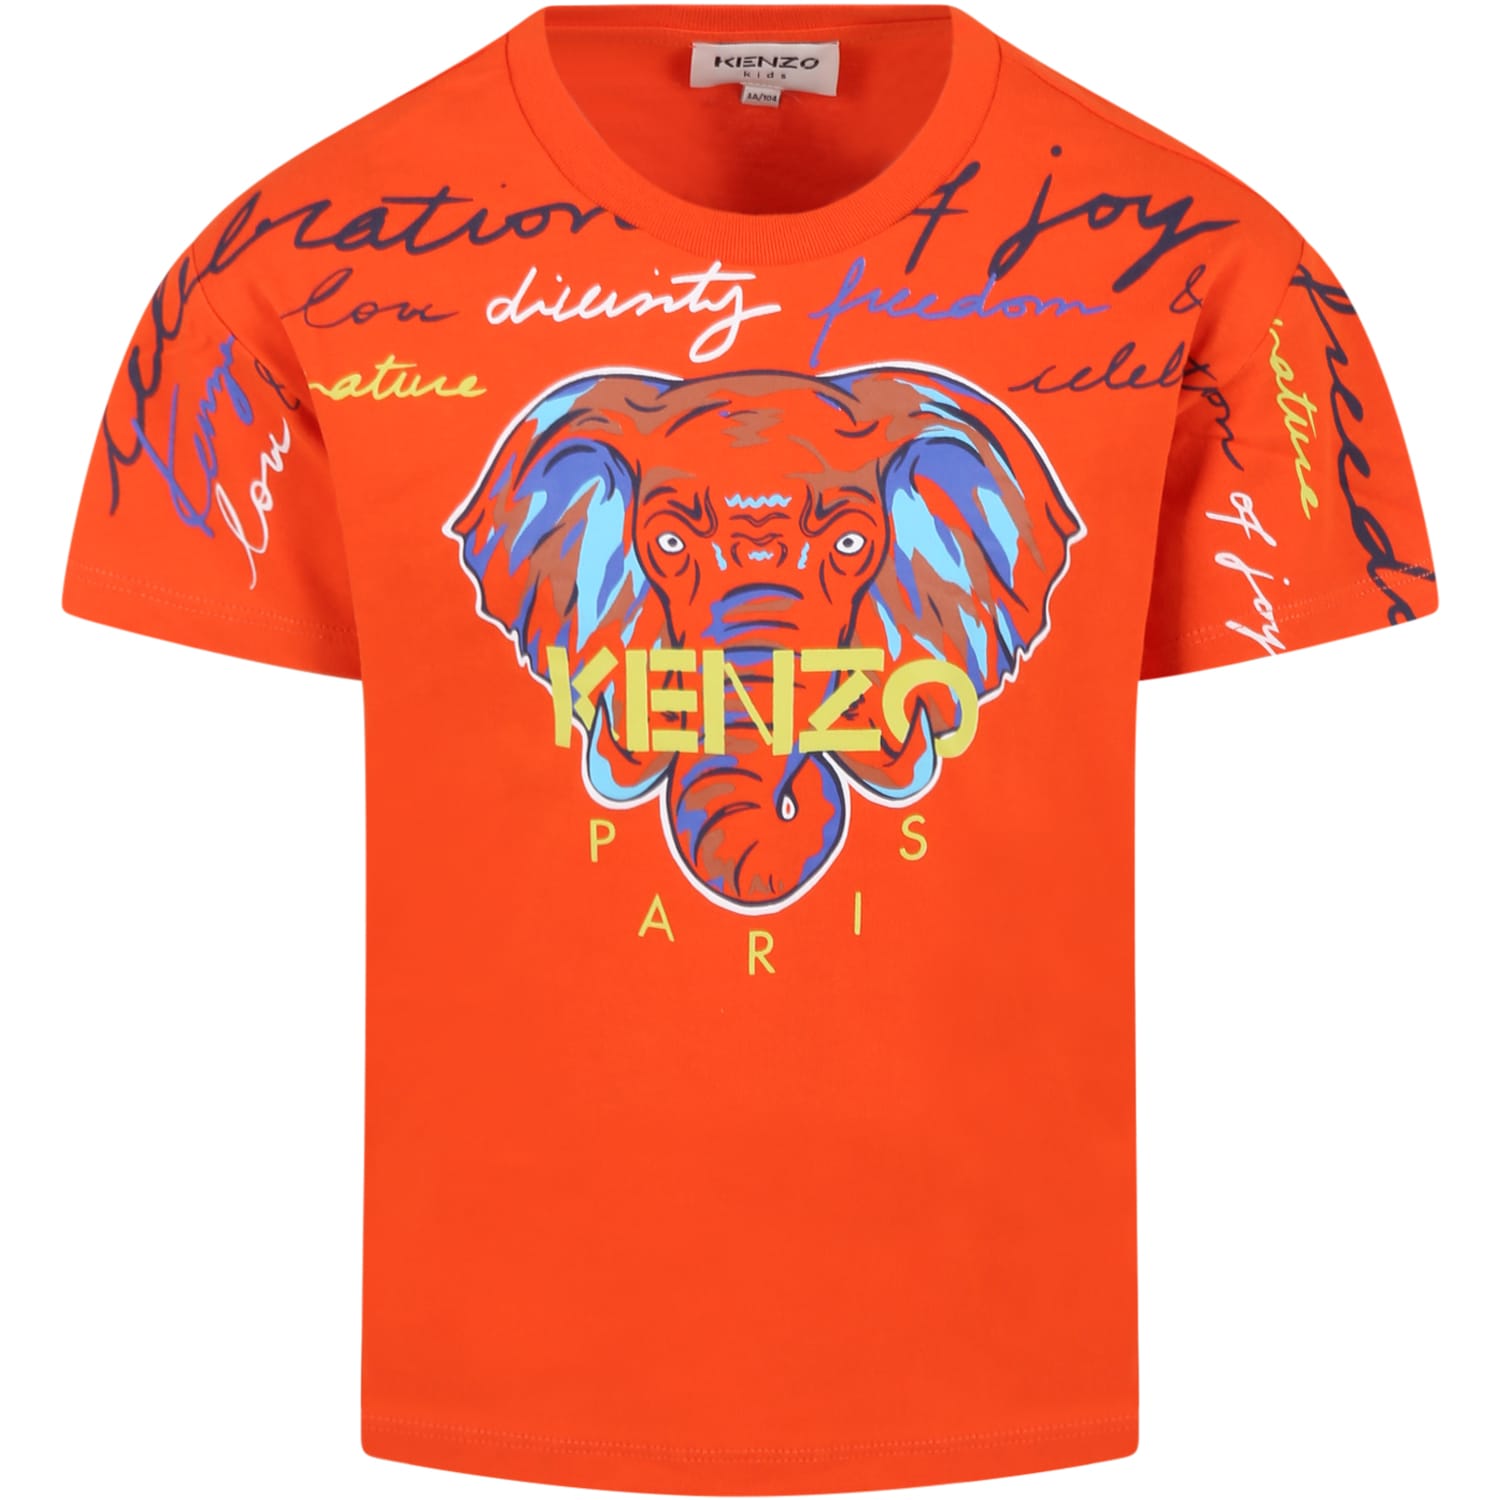 Kenzo Kids Orange T-shirt For Boy With Elephant